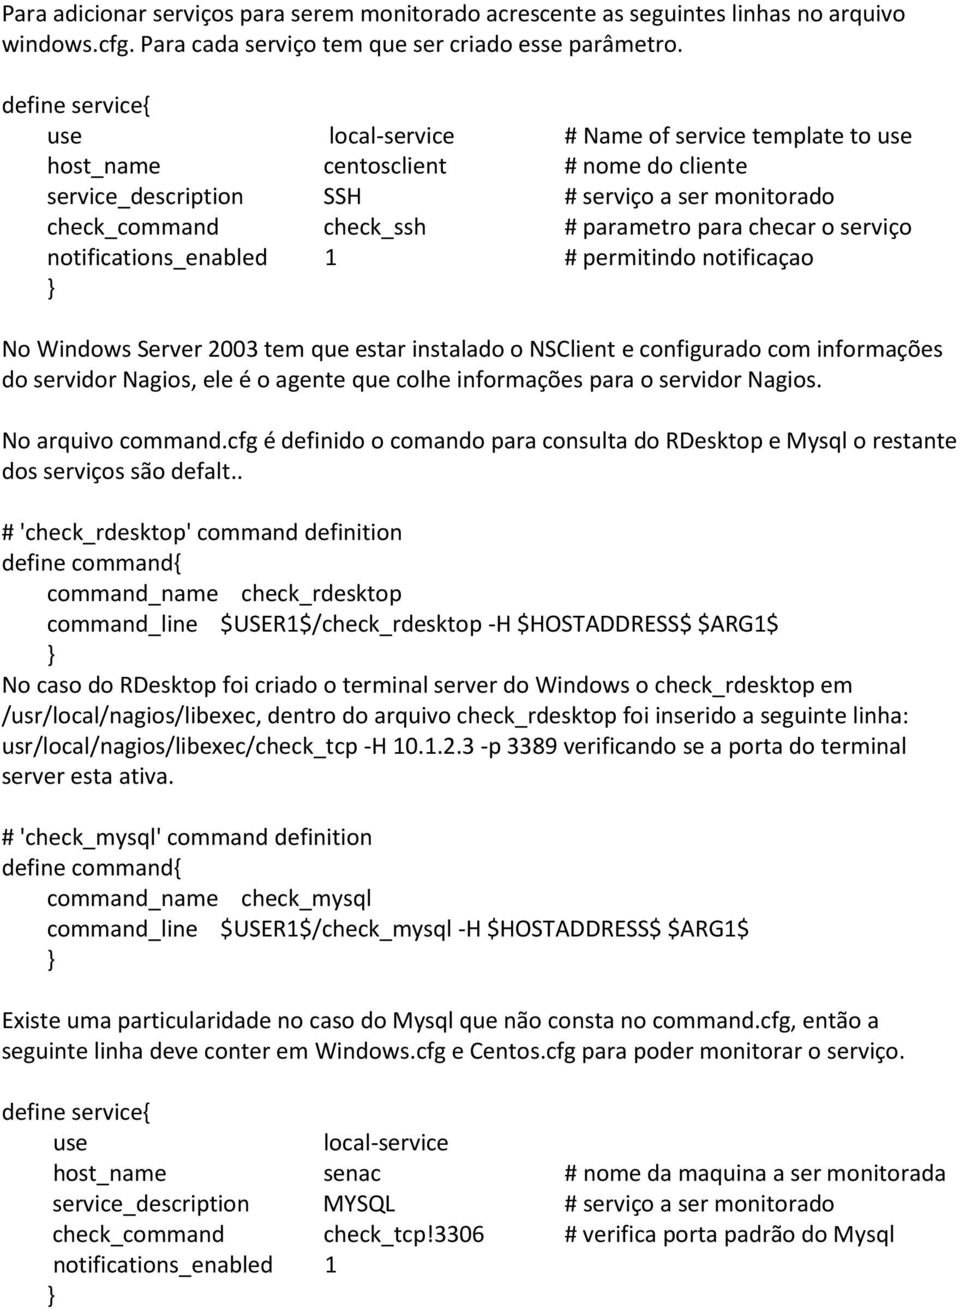 serviço notifications_enabled 1 # permitindo notificaçao No Windows Server 2003 tem que estar instalado o NSClient e configurado com informações do servidor Nagios, ele é o agente que colhe